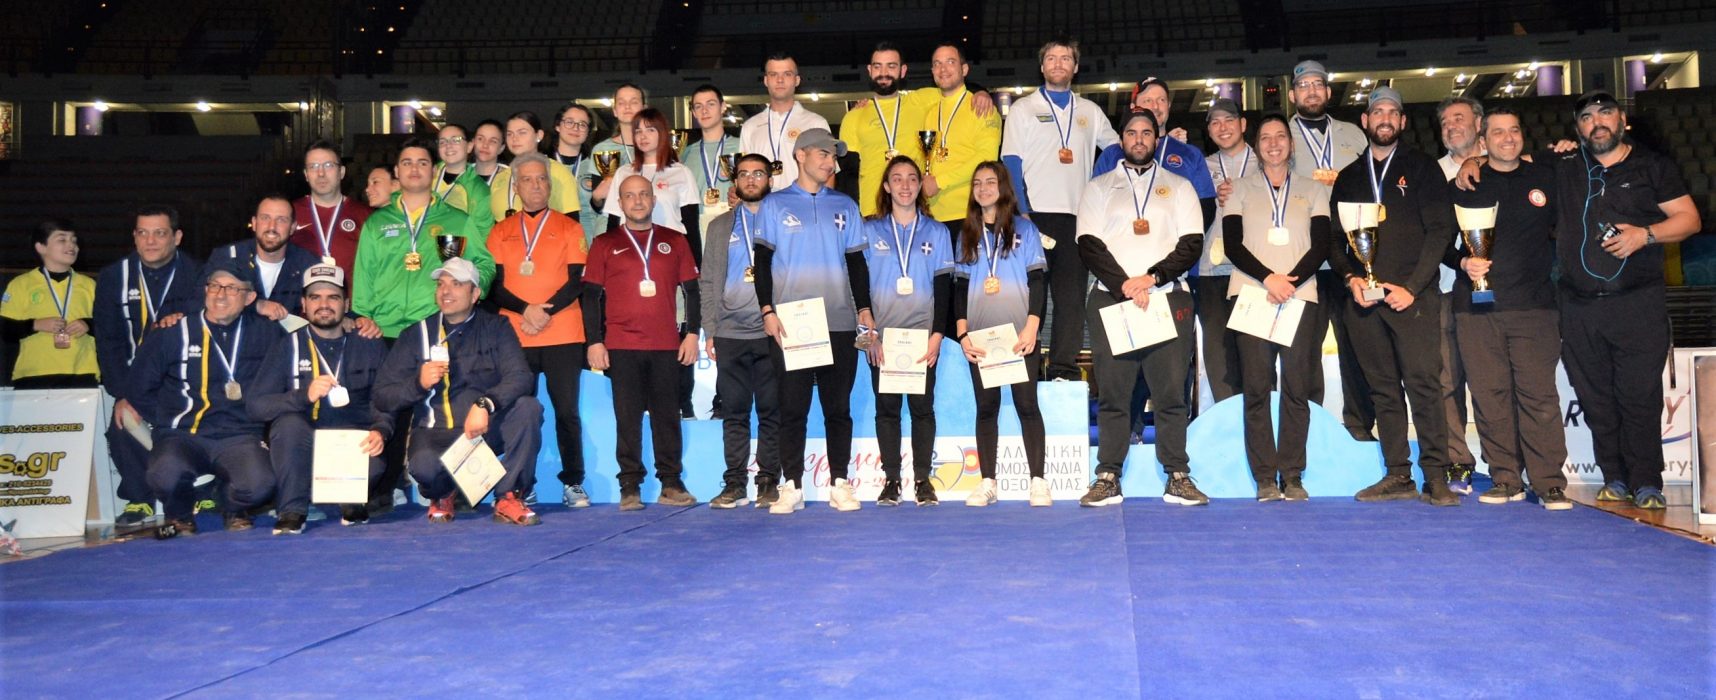 Το Πανελλήνιο Πρωτάθλημα τοξοβολίας στο Σ.Ε.Φ.  άνοιξε νέους δρόμους για το άθλημα